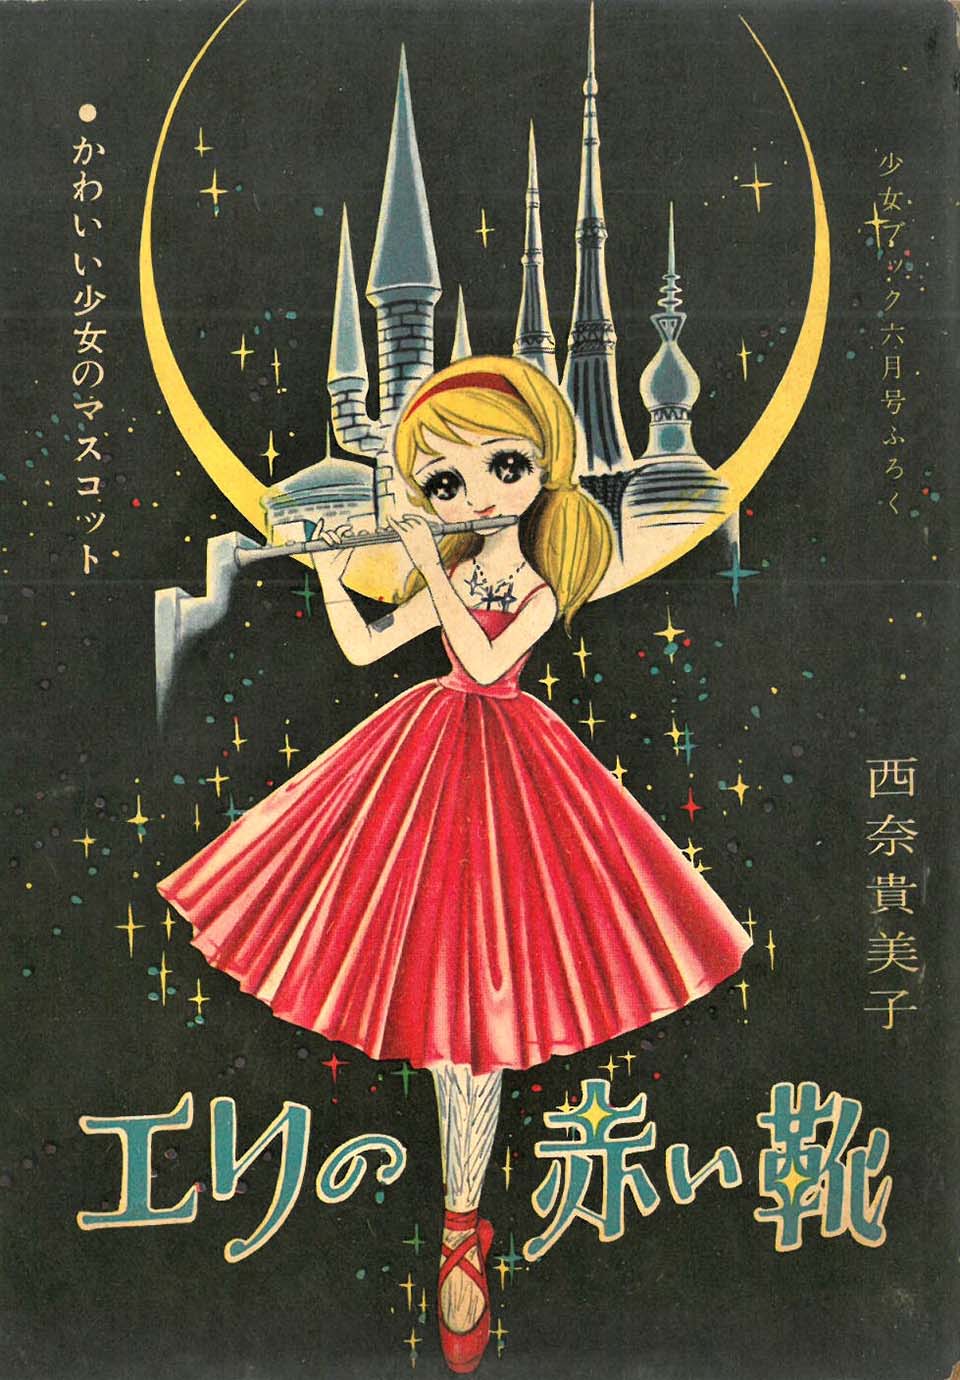 西奈貴美子「エリの赤い靴」『少女ブック』1961年6月号ふろく